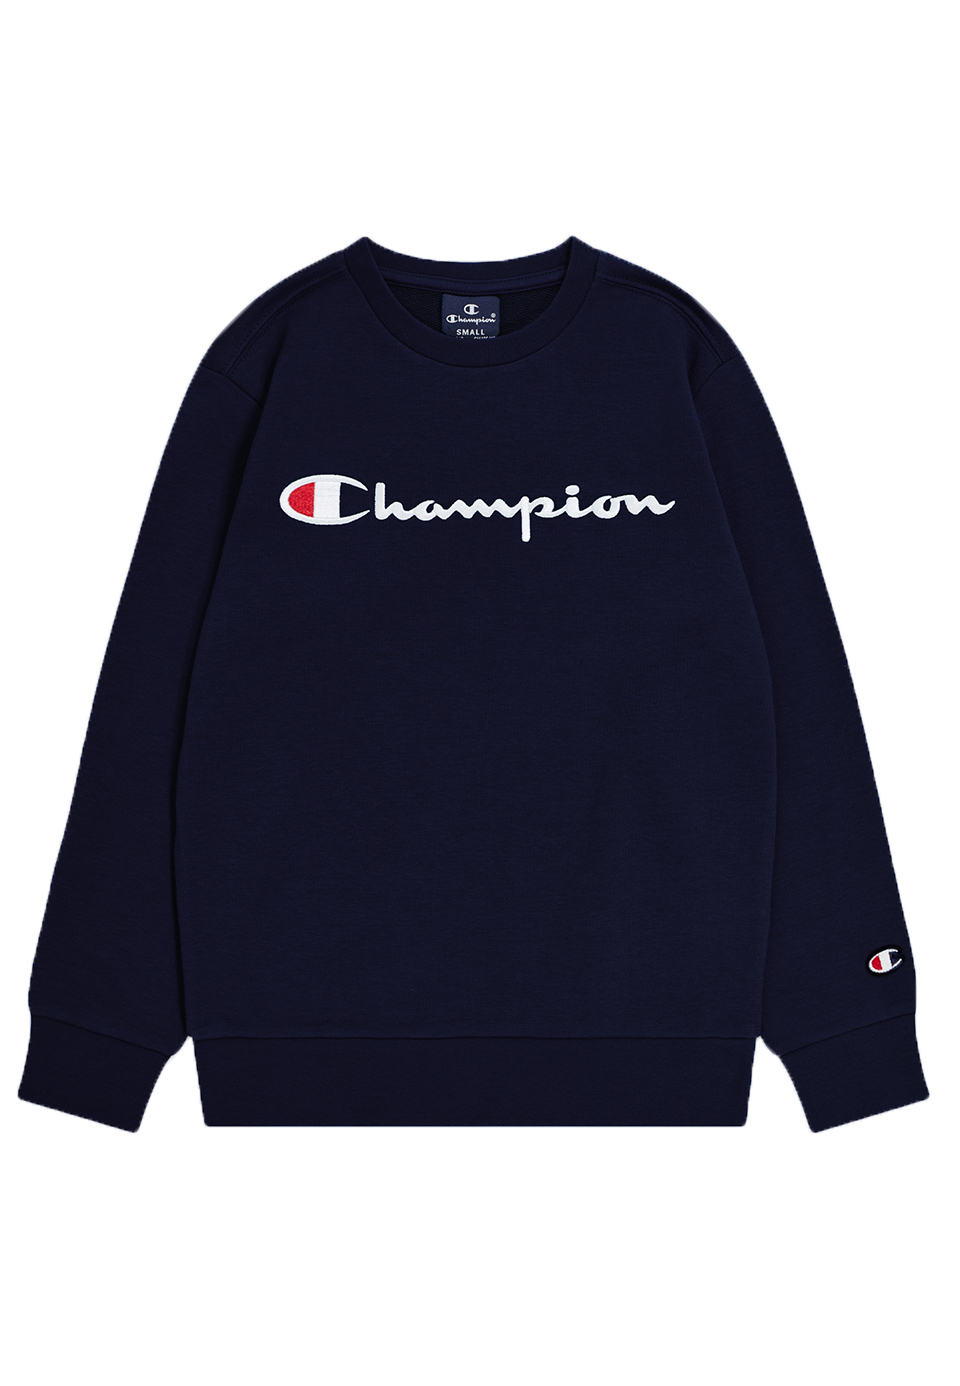 Champion Jungen Crewneck Sweatshirt 306748 dunkelblau 